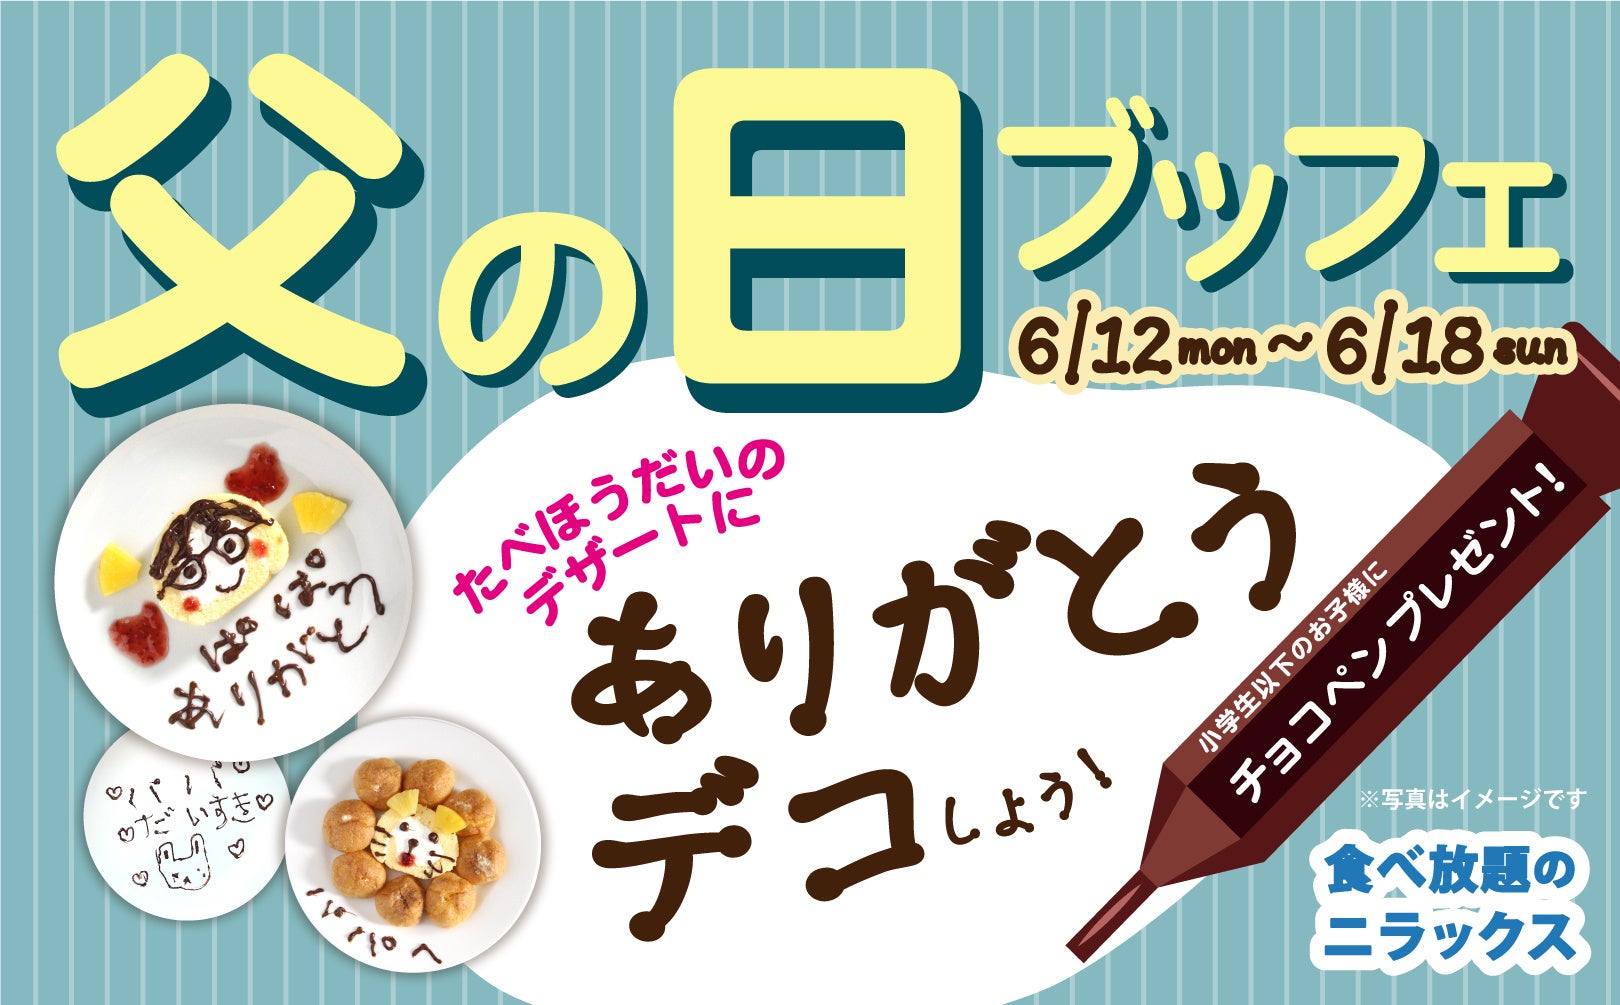 【徳島県初上陸!!】cafe Hanamori ザ・ビッグエクストラ阿南店 6/14（水）グランドオープン!